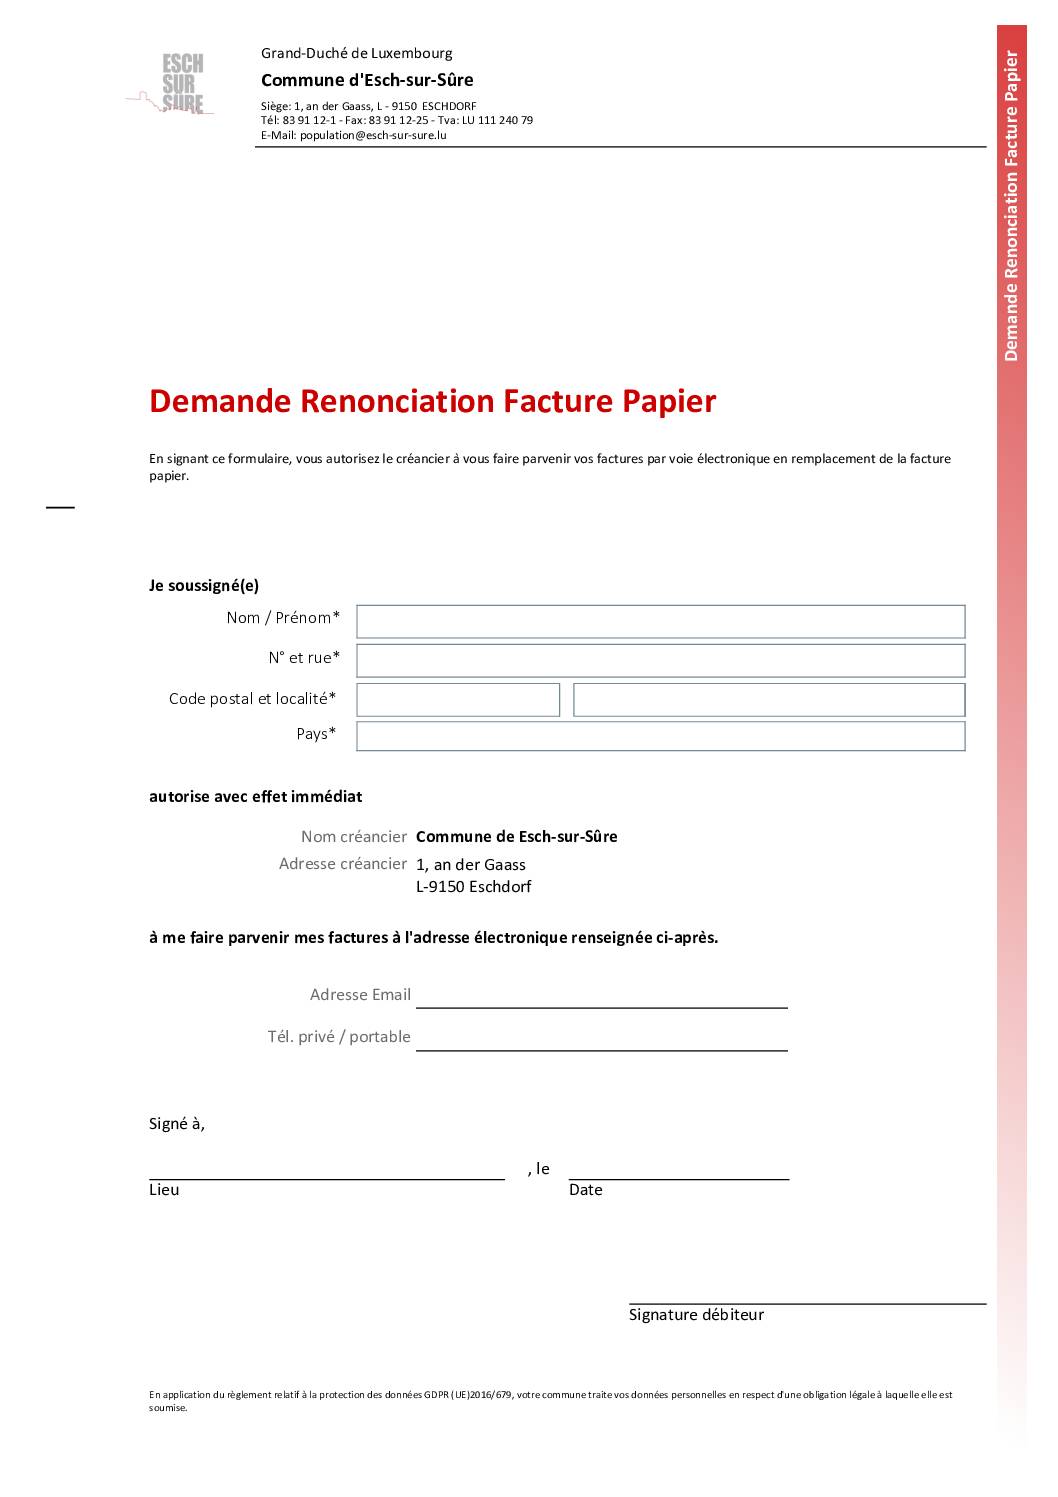 Formulaire - Demande Renonciation Papier